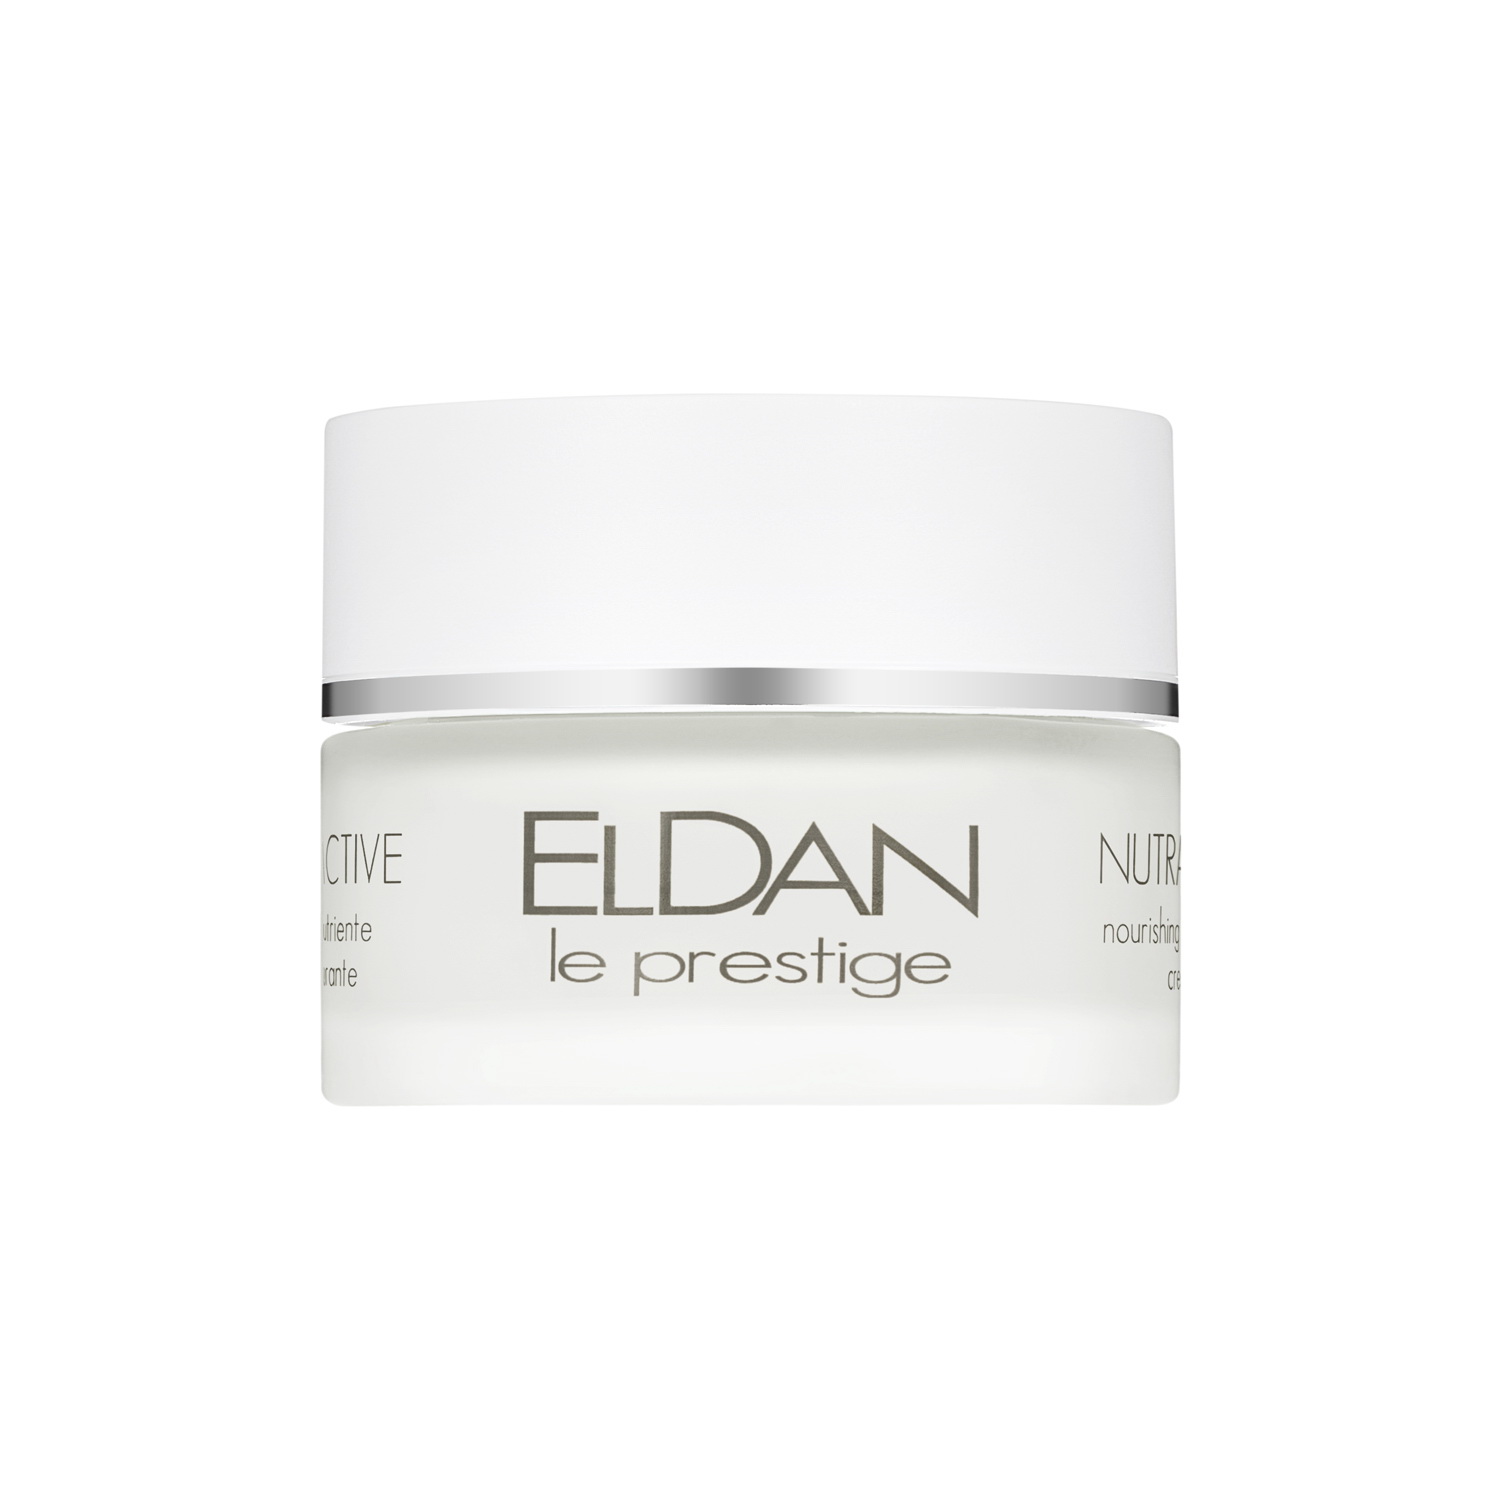 Крем для лица ELDAN Cosmetics Nourishing Repairing Cream питательный, 50 мл compagnie de provence крем для рук ок мимозы fleur de mimosa